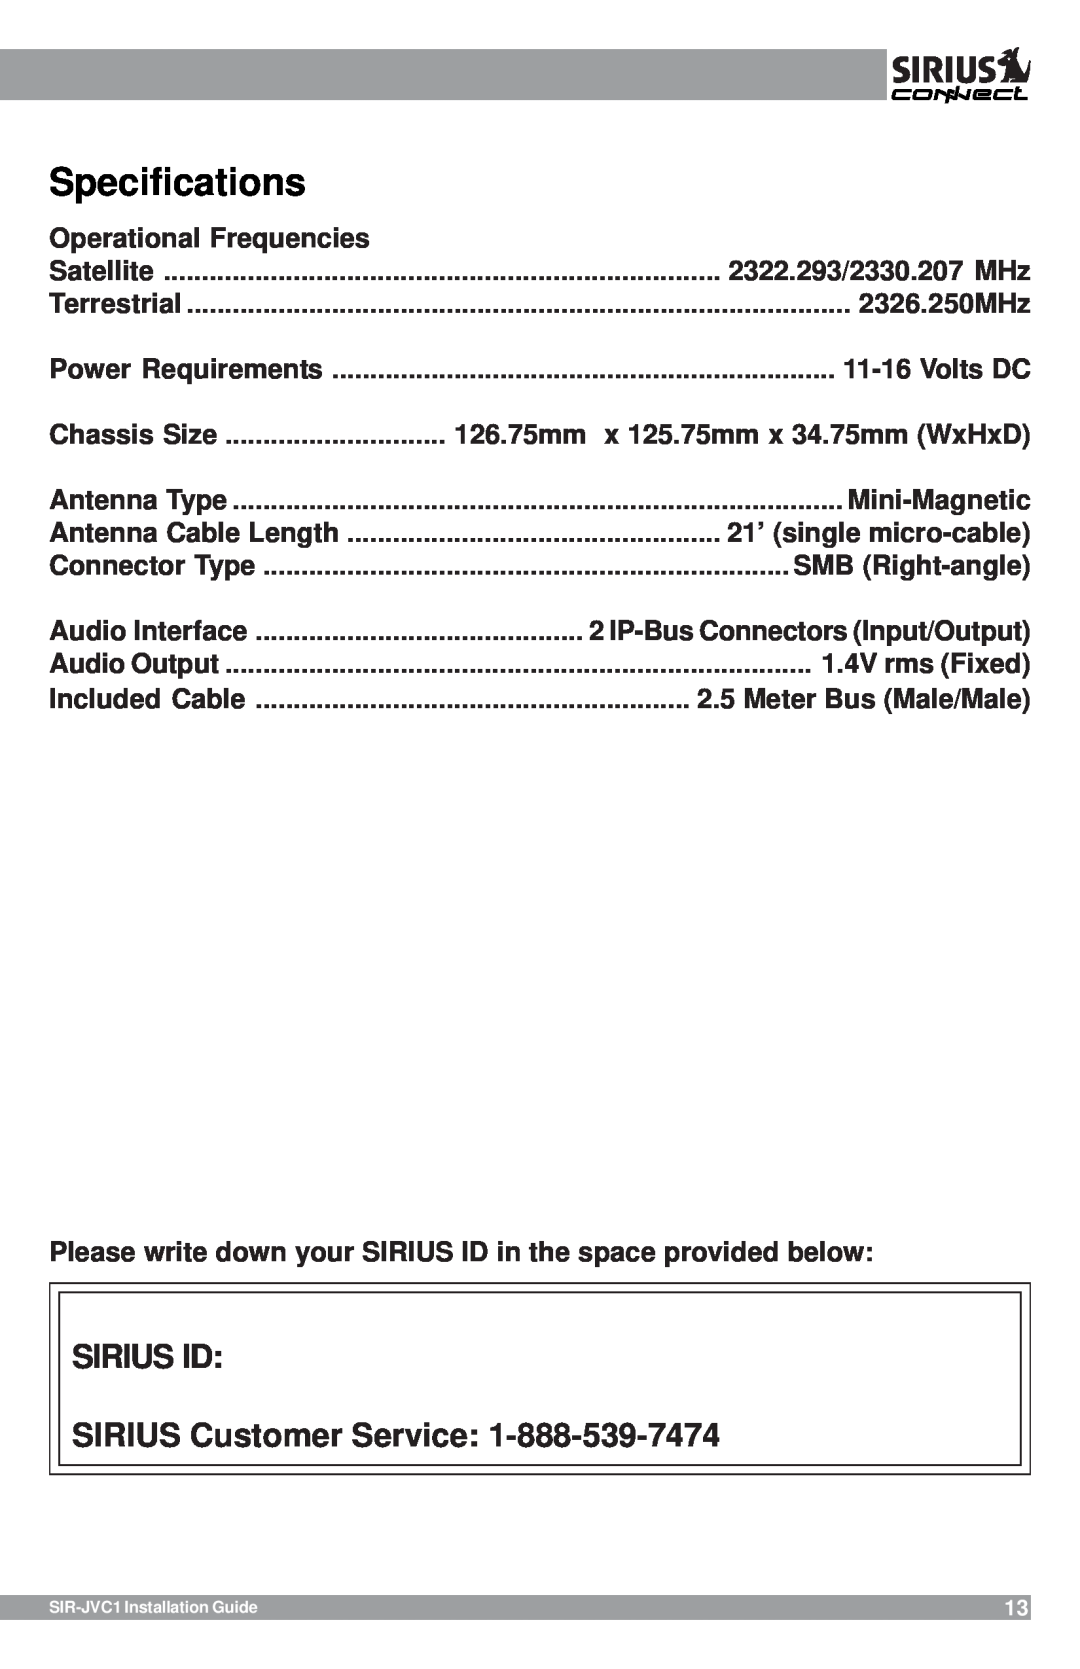 Sirius Satellite Radio SIR-JVC1 manual Specifications, SIRIUS ID SIRIUS Customer Service 